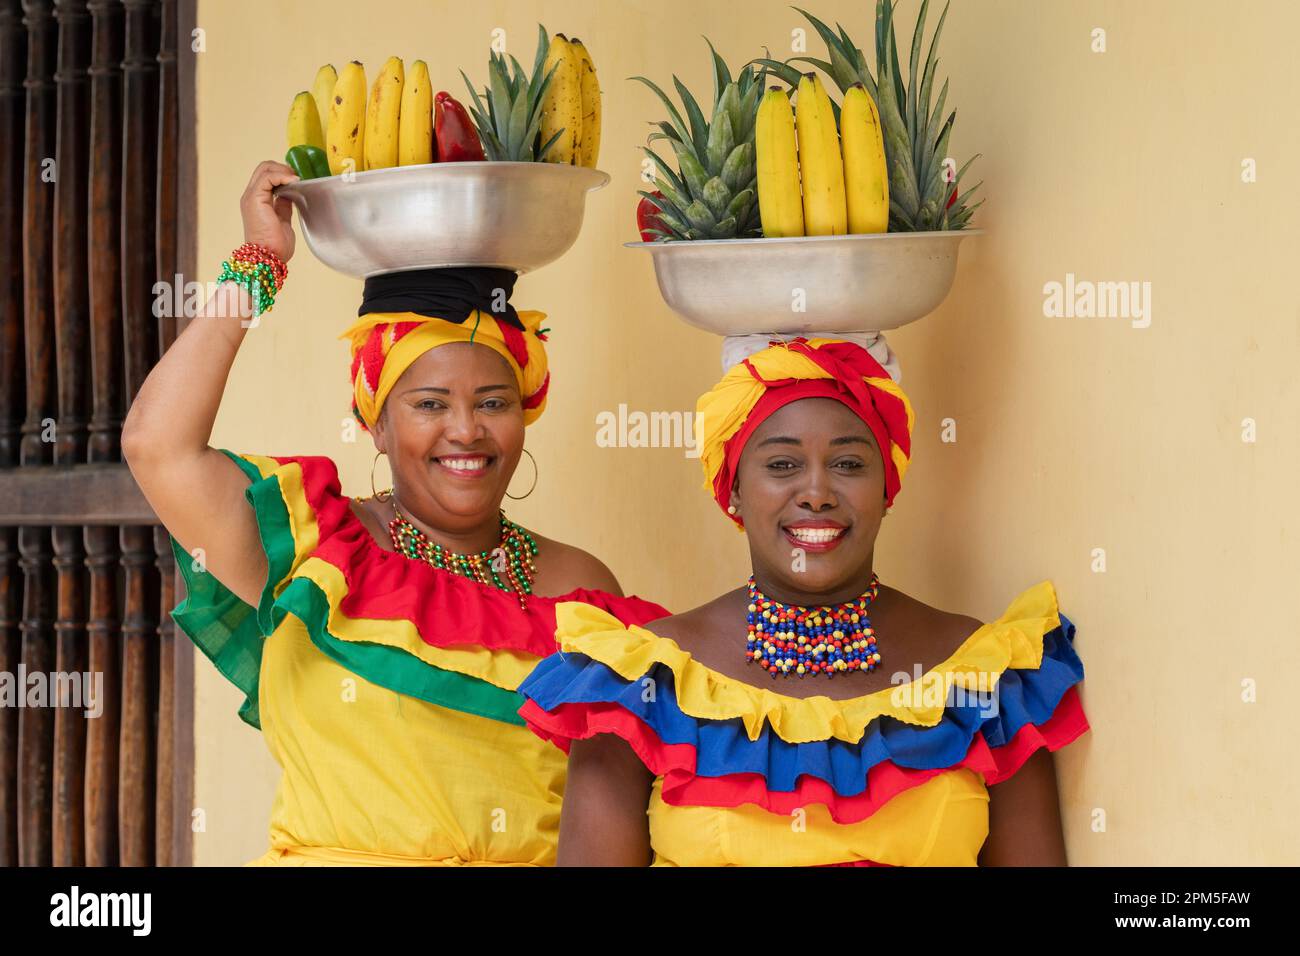 Fröhliche lächelnde Straßenverkäufer von frischem Obst aus Palenquera in der Altstadt von Cartagena, Kolumbien. Fröhliche afrokolumbianische Frauen in traditionellen Kostümen. Stockfoto